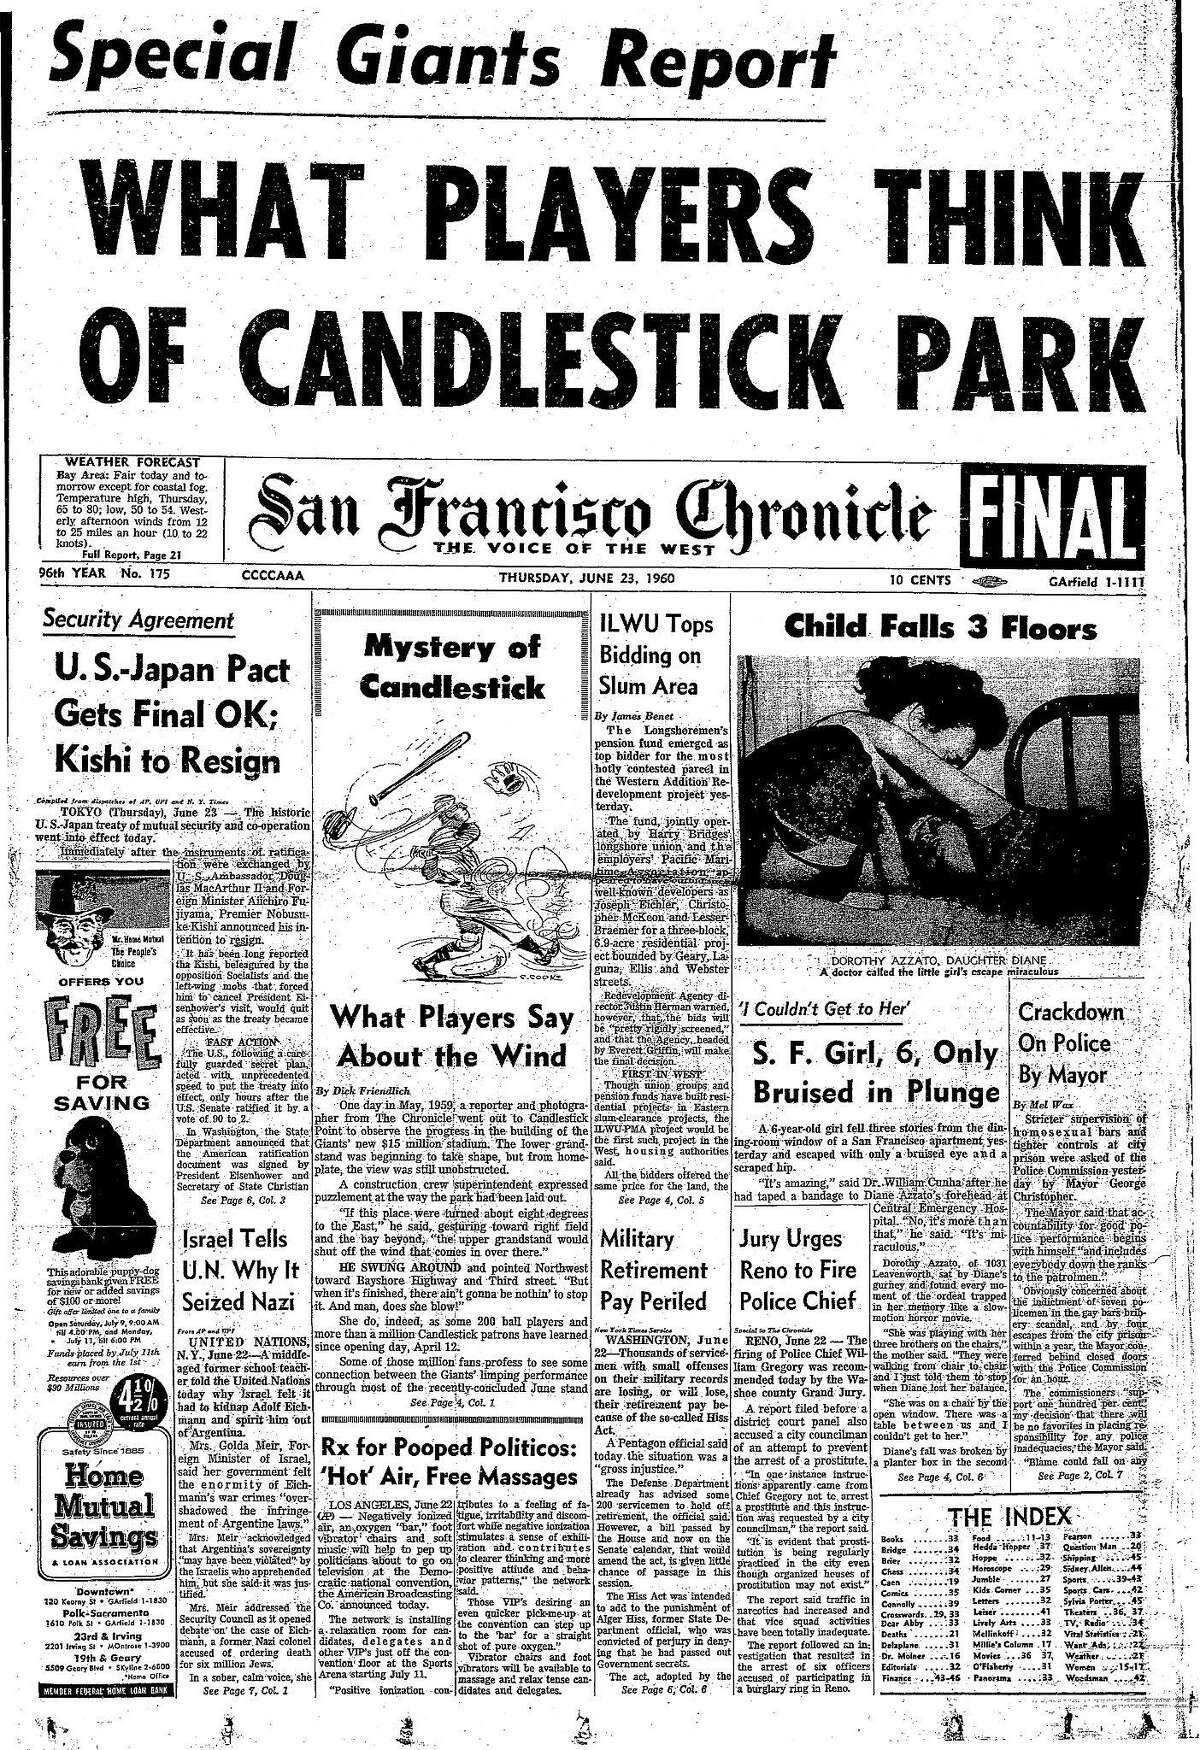 历史编年史头版1960年6月23日头版玩家对烛台公园的风有什么看法